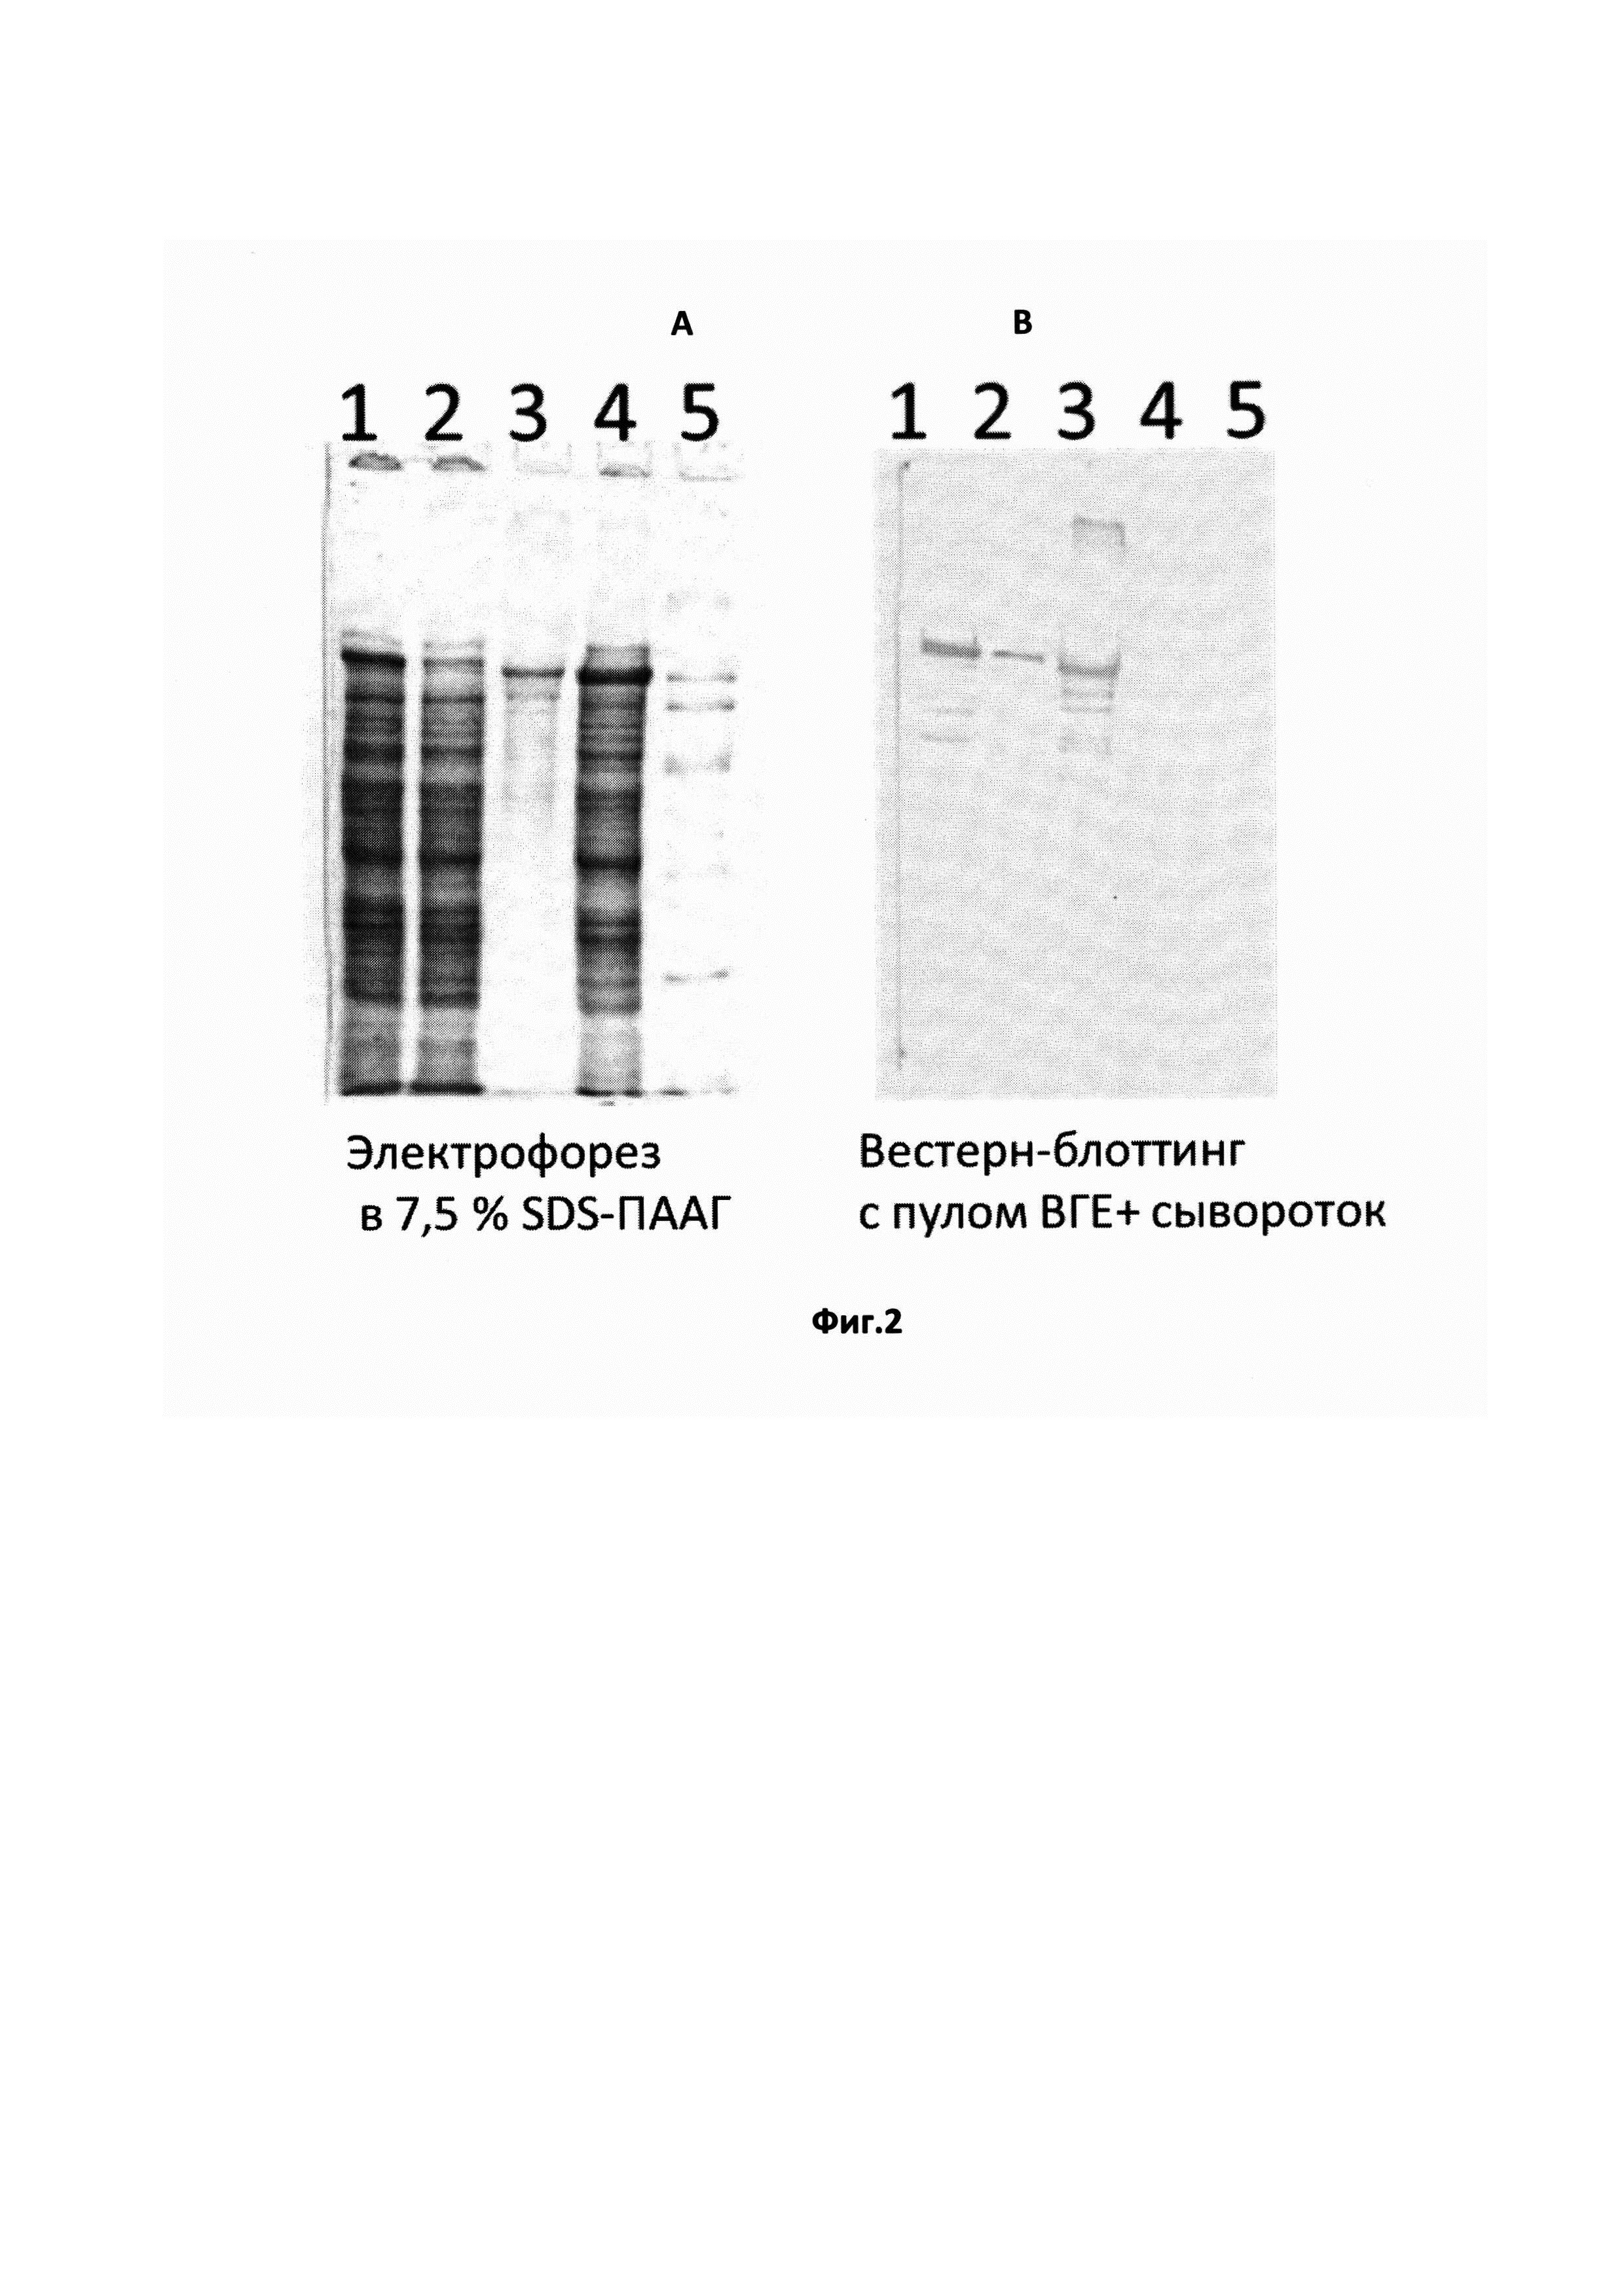 Рекомбинантный белок, содержащий антигенно-значимые фрагменты белков вируса гепатита Е, используемый в тест-системах для серодиагностики гепатита Е (варианты)